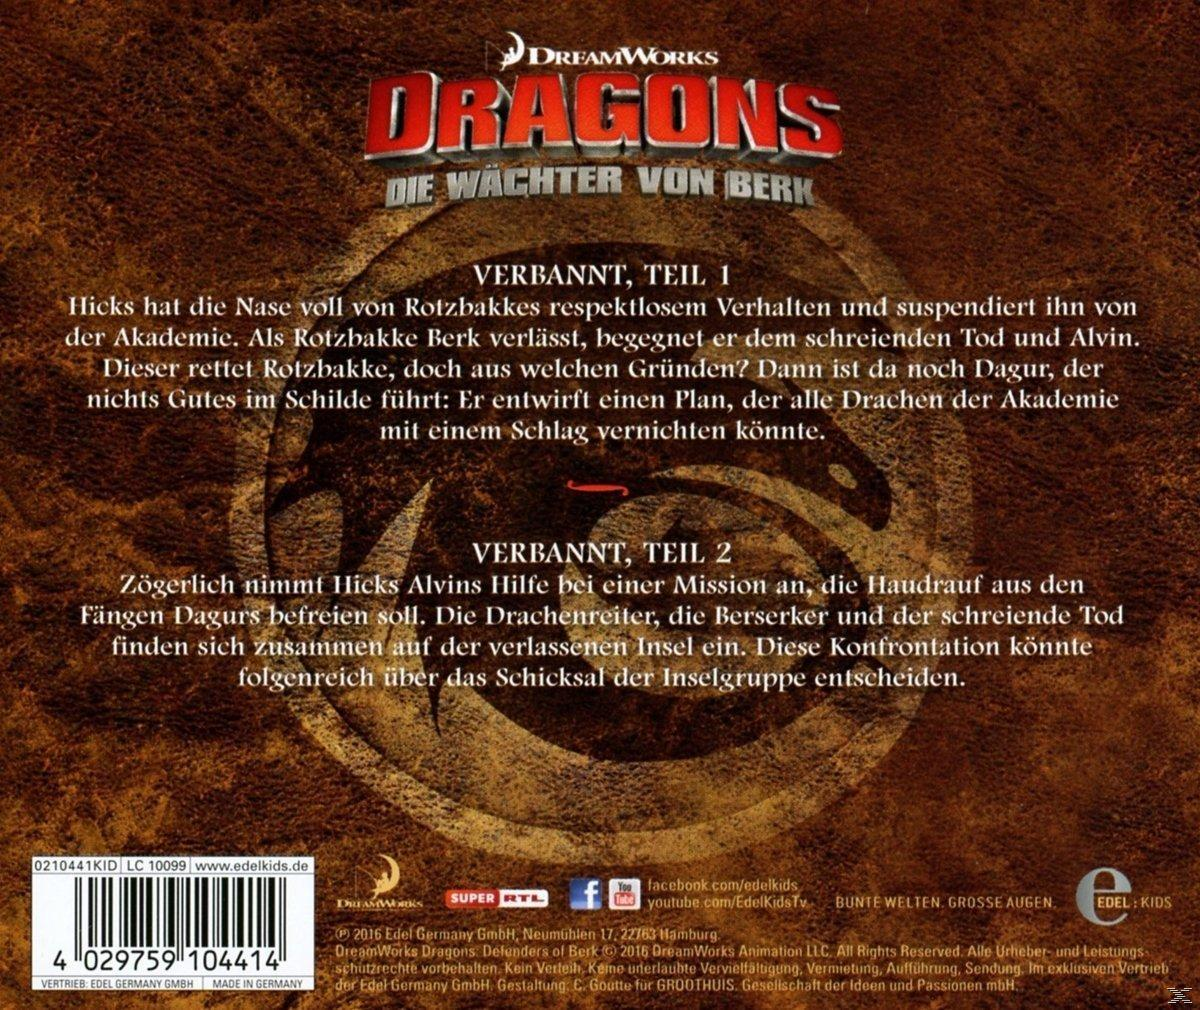 Dragons-die Wächter Von Berk Hörspiel (18)Original - Z.Tv-Serie-Drachentausch - (CD)